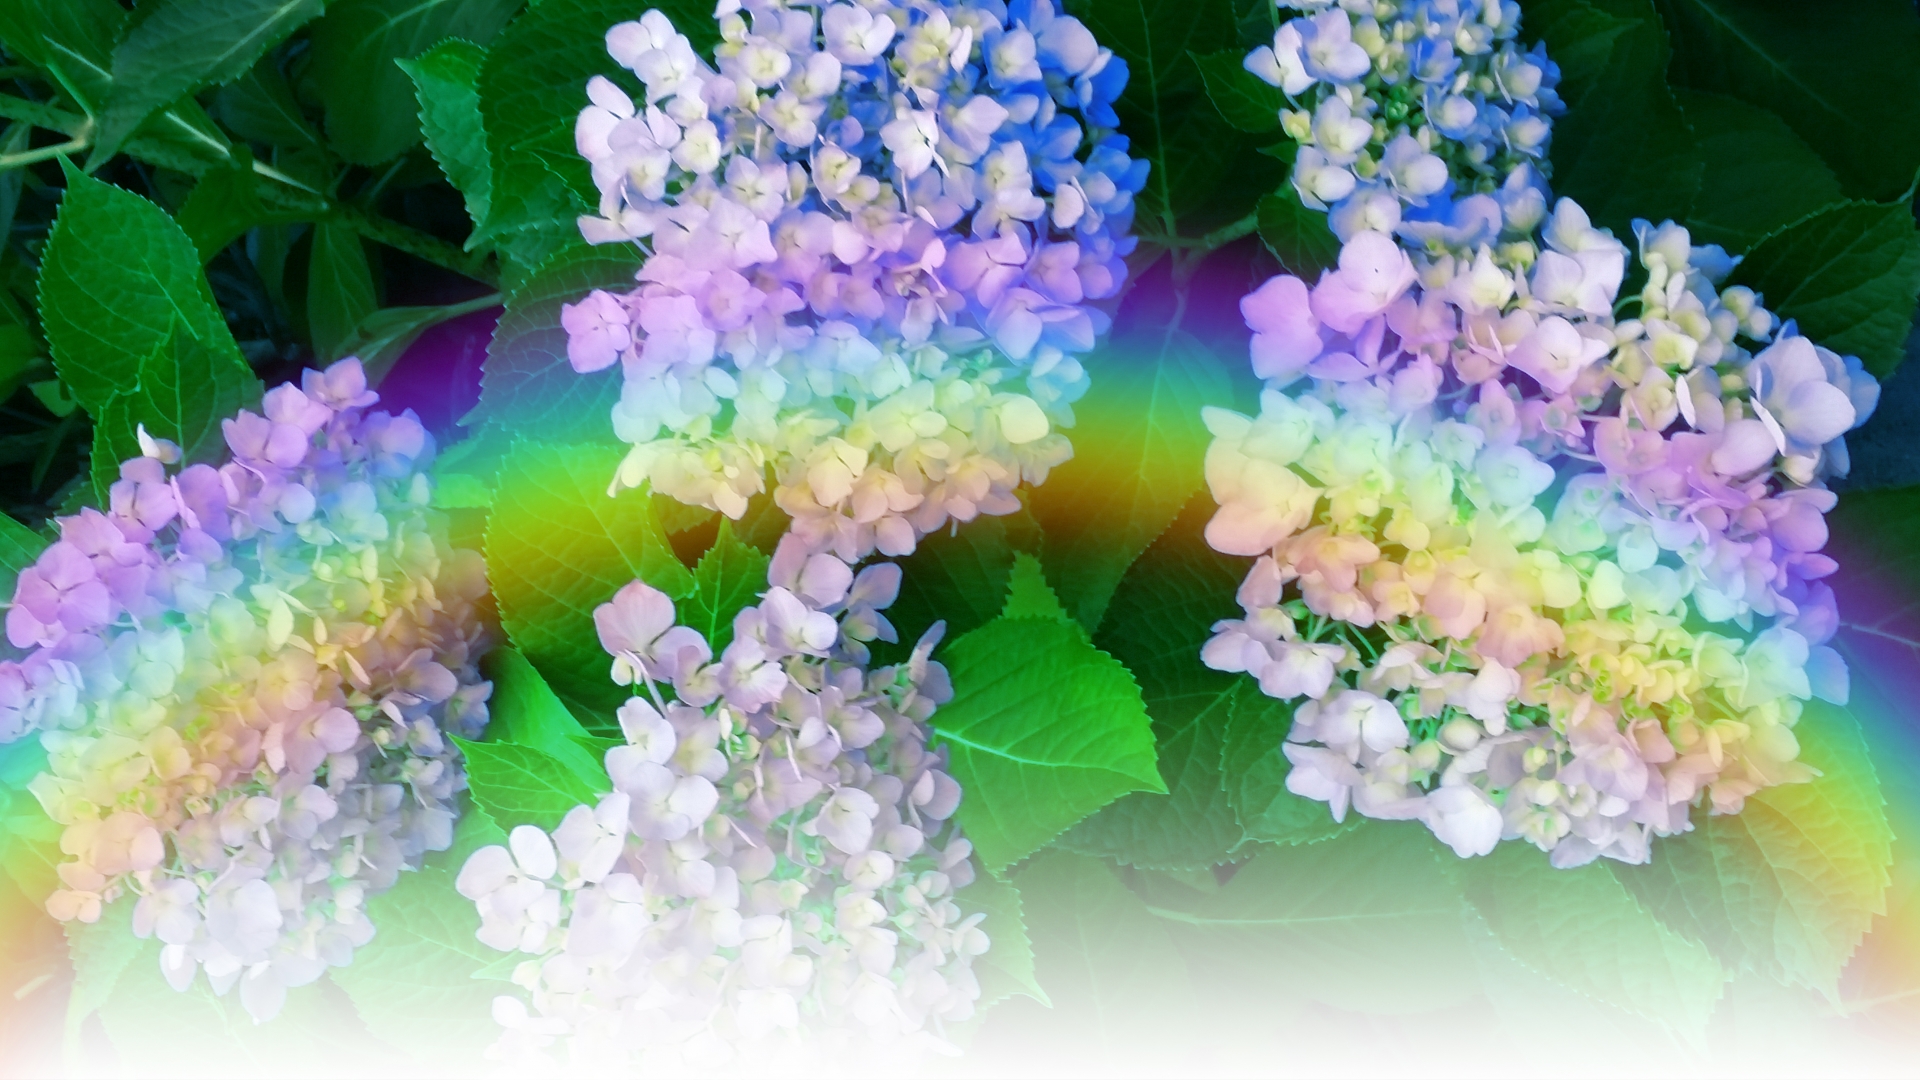 紫陽花と虹